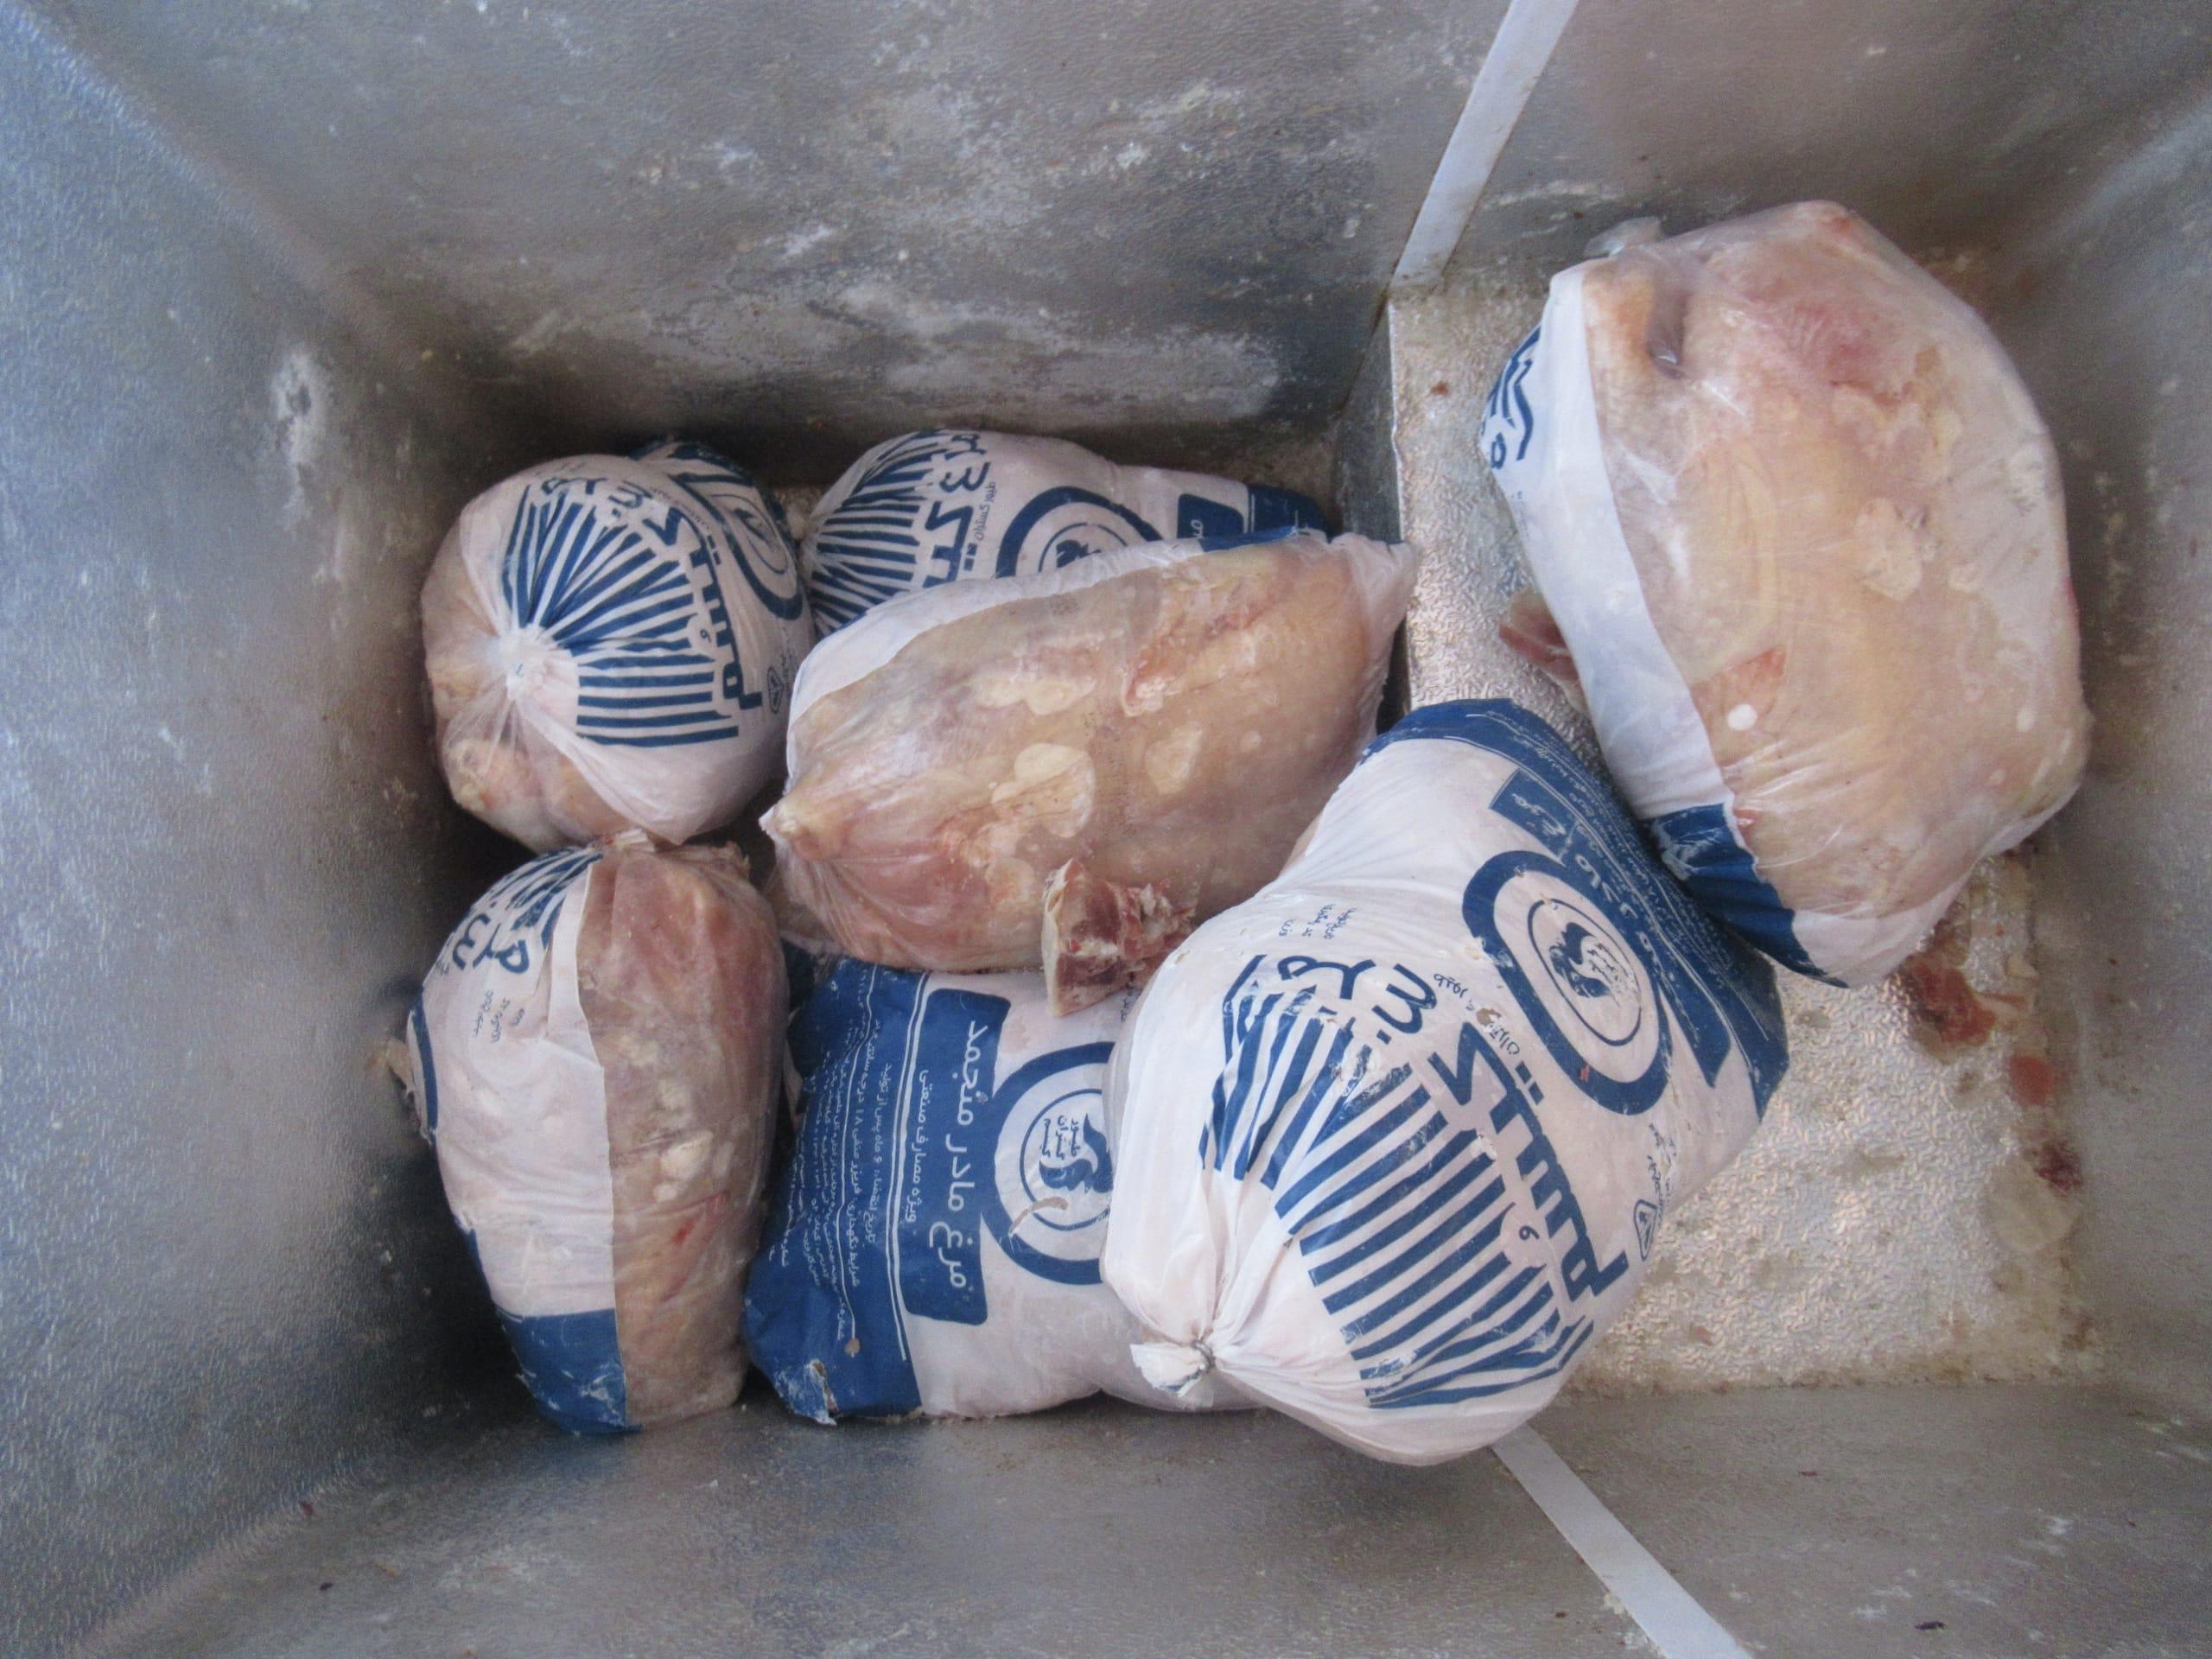  گوشت مرغ های منجمد شده، ذخیره شده و بسته بندی شده. مانند این،